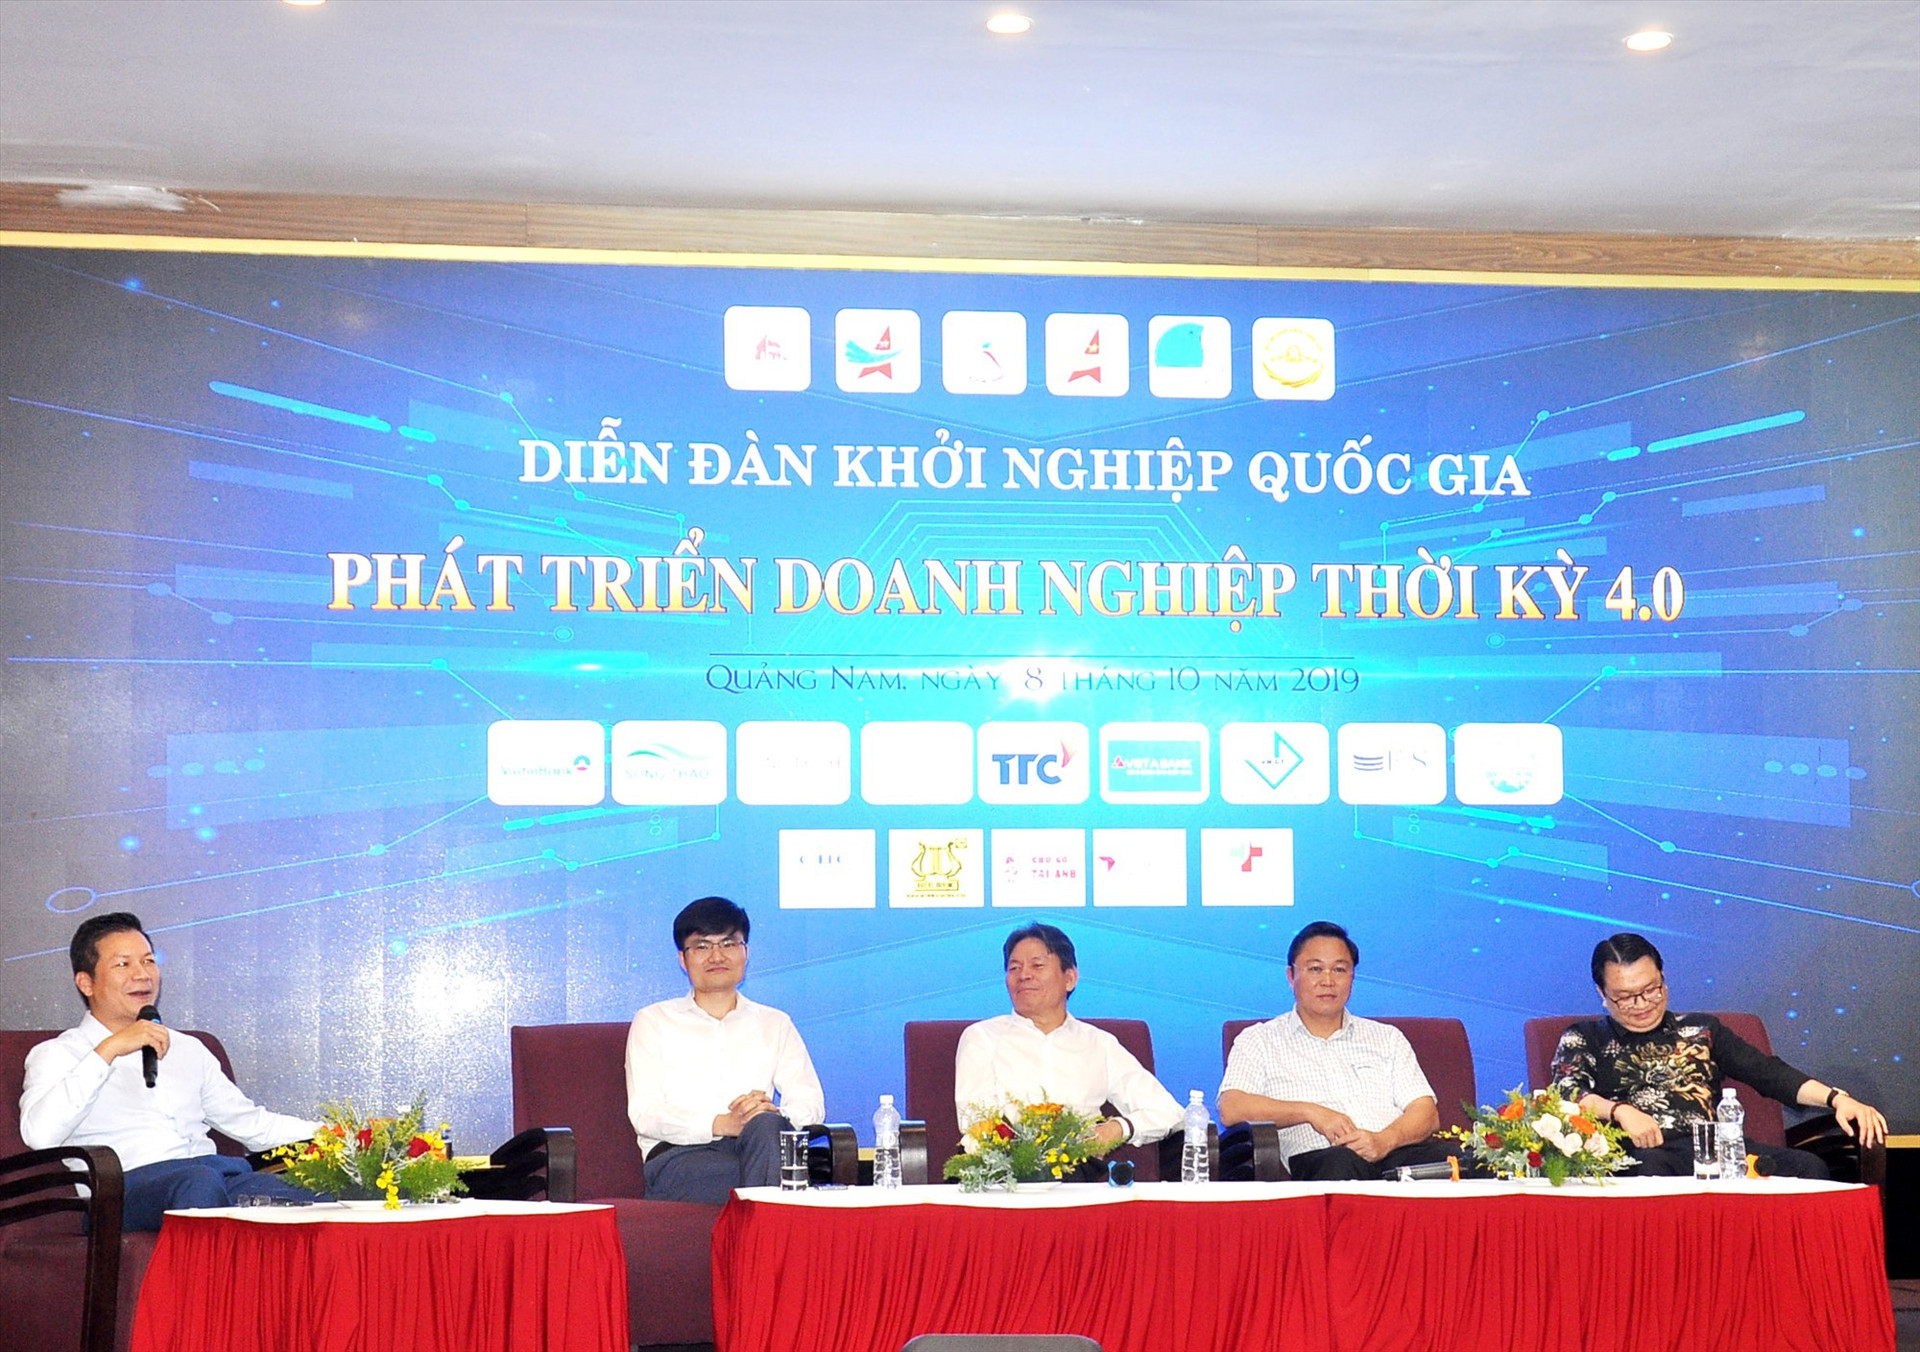 QNB hỗ trợ tổ chức các diễn đàn khởi nghiệp tại Quảng Nam. TRONG ẢNH: Diễn đàn khởi nghiệp quốc gia về phát triển doanh nghiệp thời kỳ 4.0. Ảnh: VINH ANH